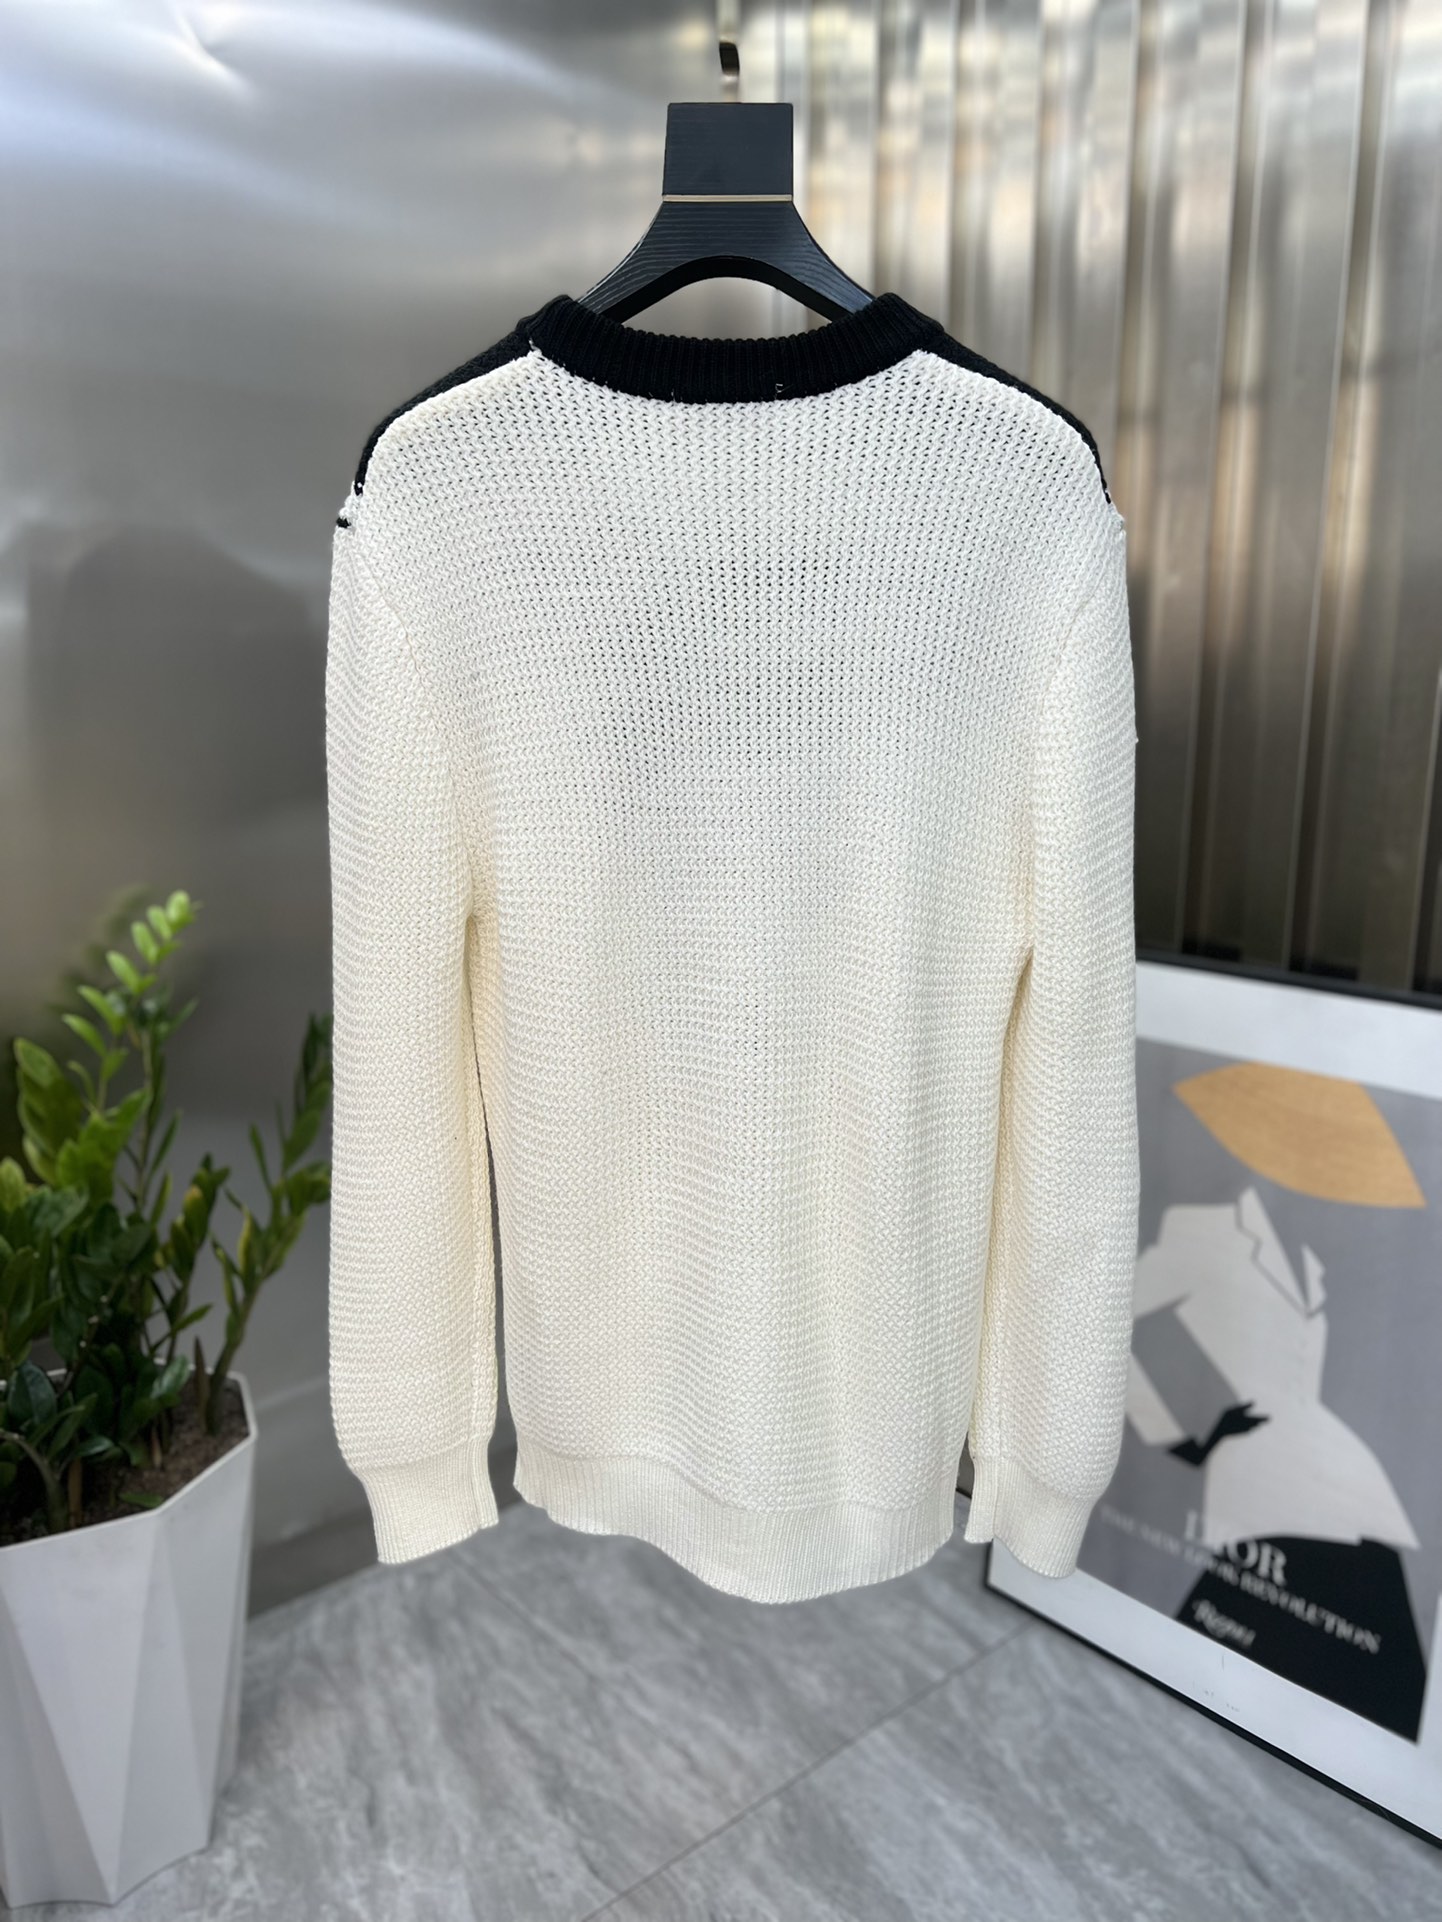 ヴァレンティノ スパイクコピー 暖かい セーター ウール 長袖 無地 柔らかい ゆったり ホワイト_2